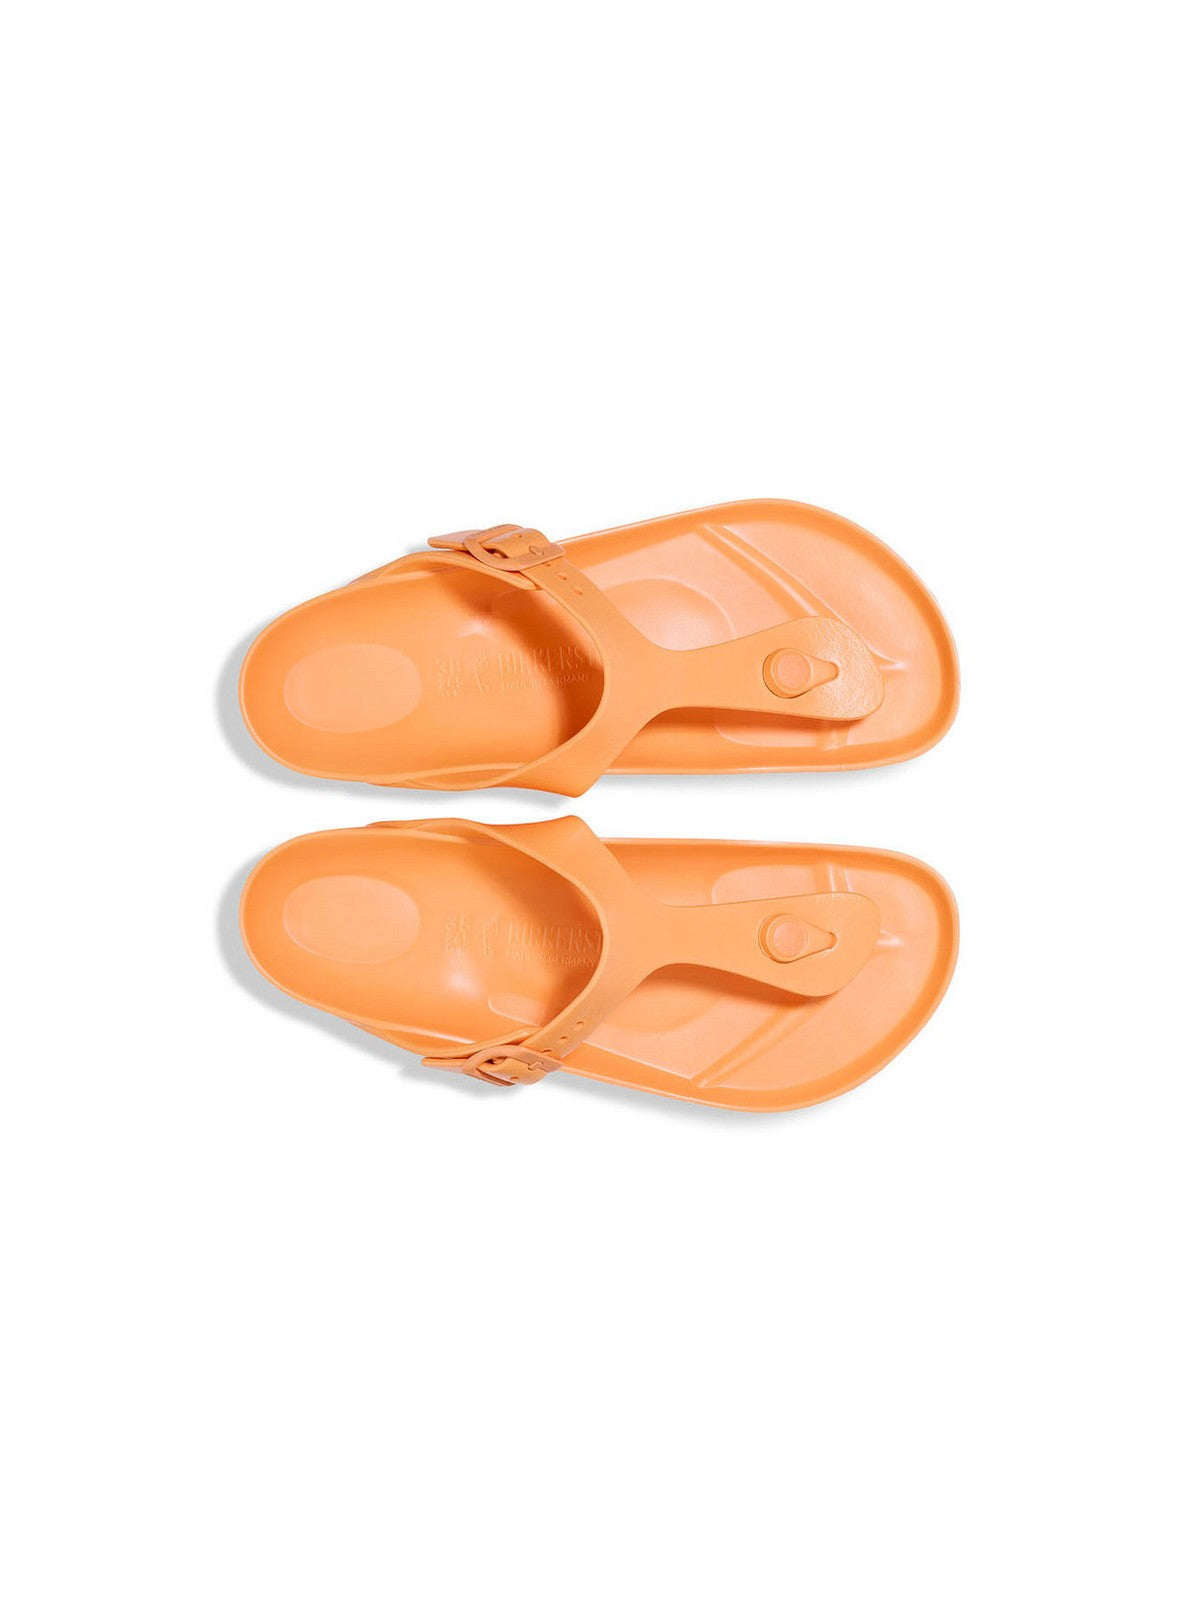 BIRKENSTOCK Sandalo Donna Gizeh 1025599 Arancione